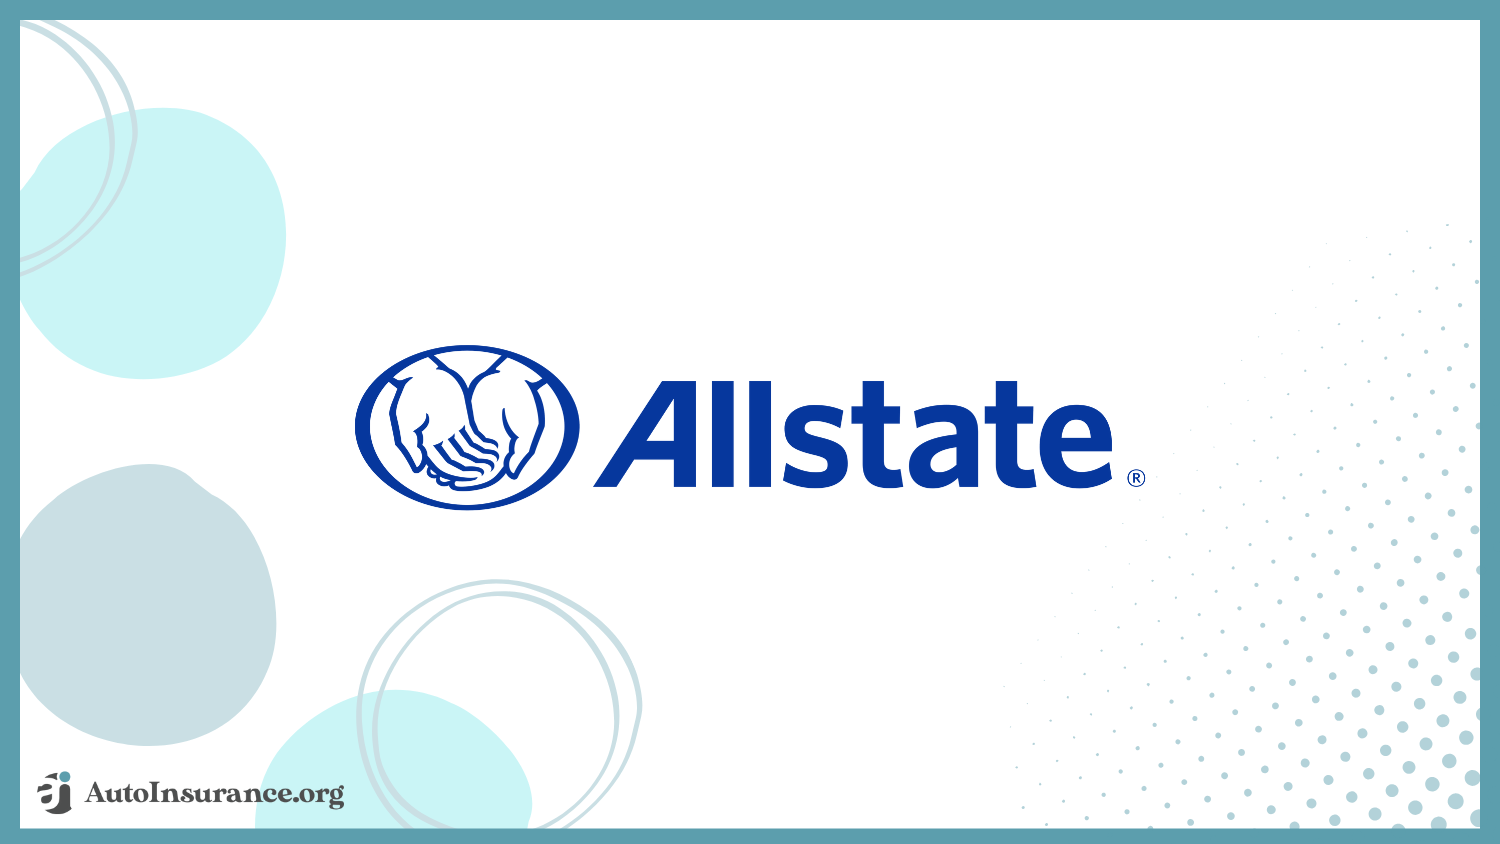 Allstate: Best Auto Insurance for Custom Cars